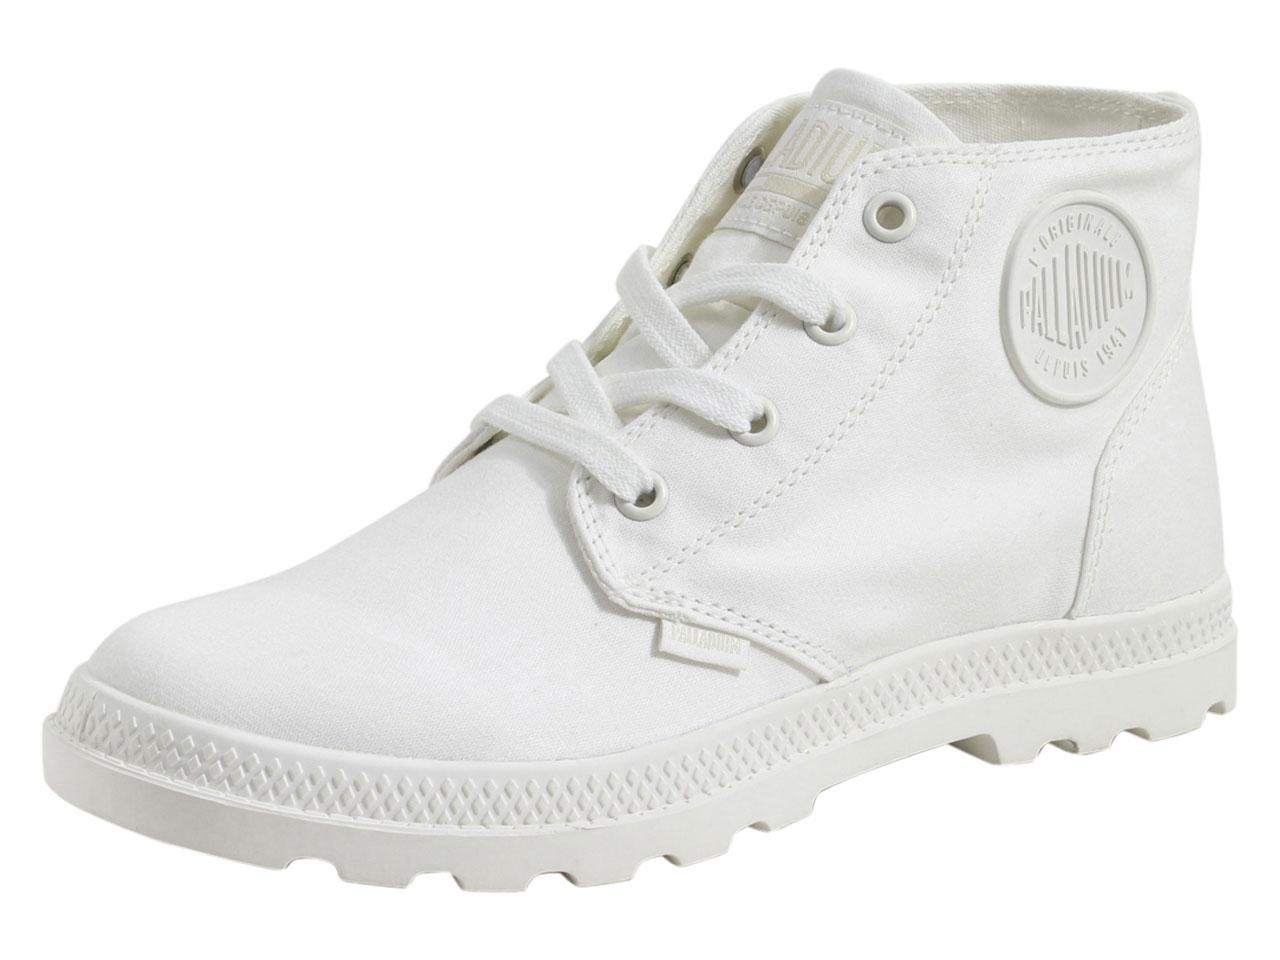 Palladium Women's Pampa Free Canvas Boots Shoes - White - 10 B(M) US